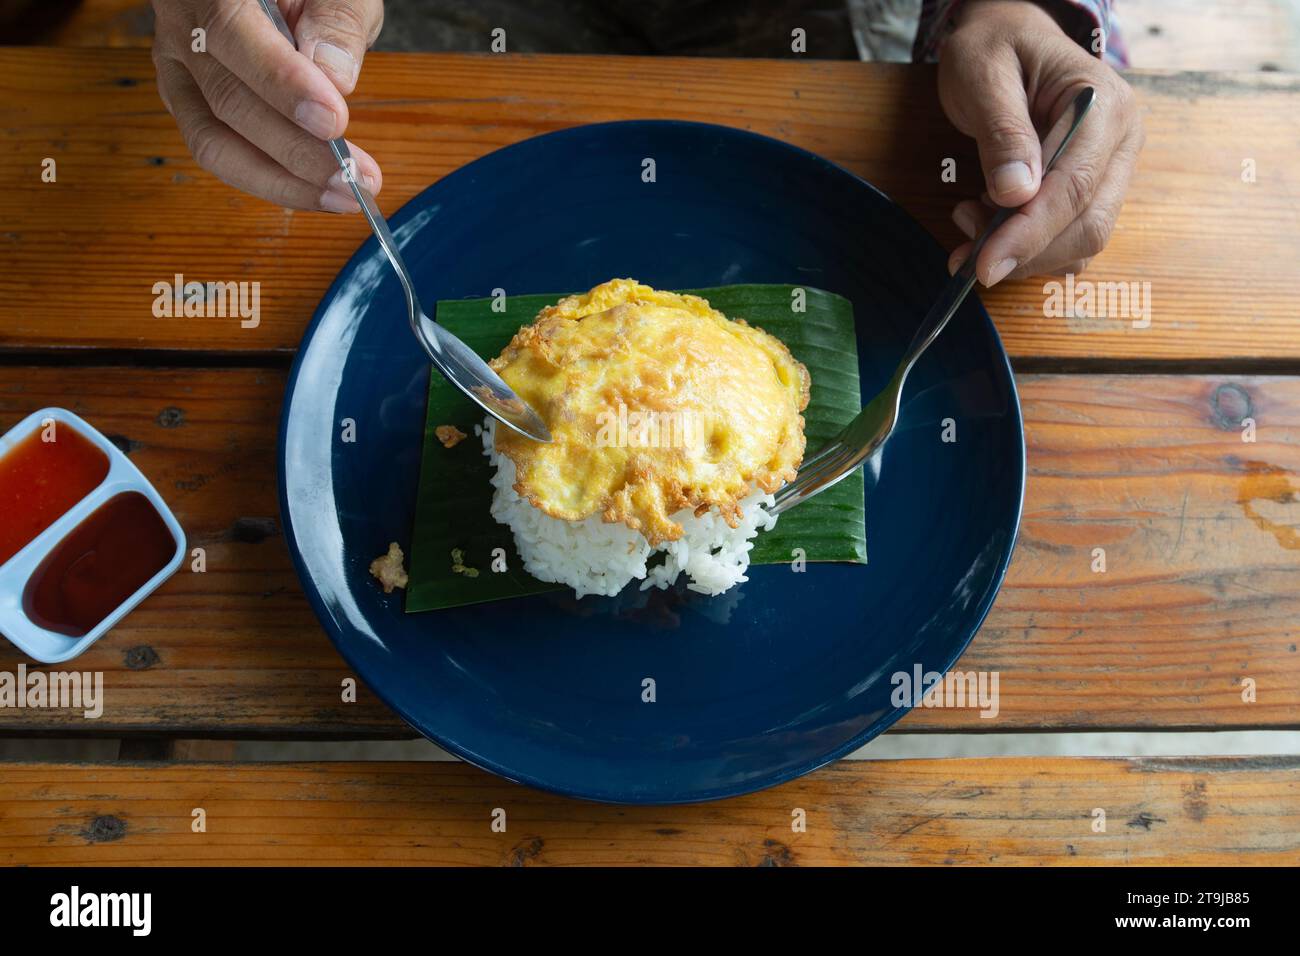 Ein Foto von oben zeigt, dass jemand thailändischen Omelettenreis isst, der so einfach ist wie Fast Food in Thailand. Stockfoto